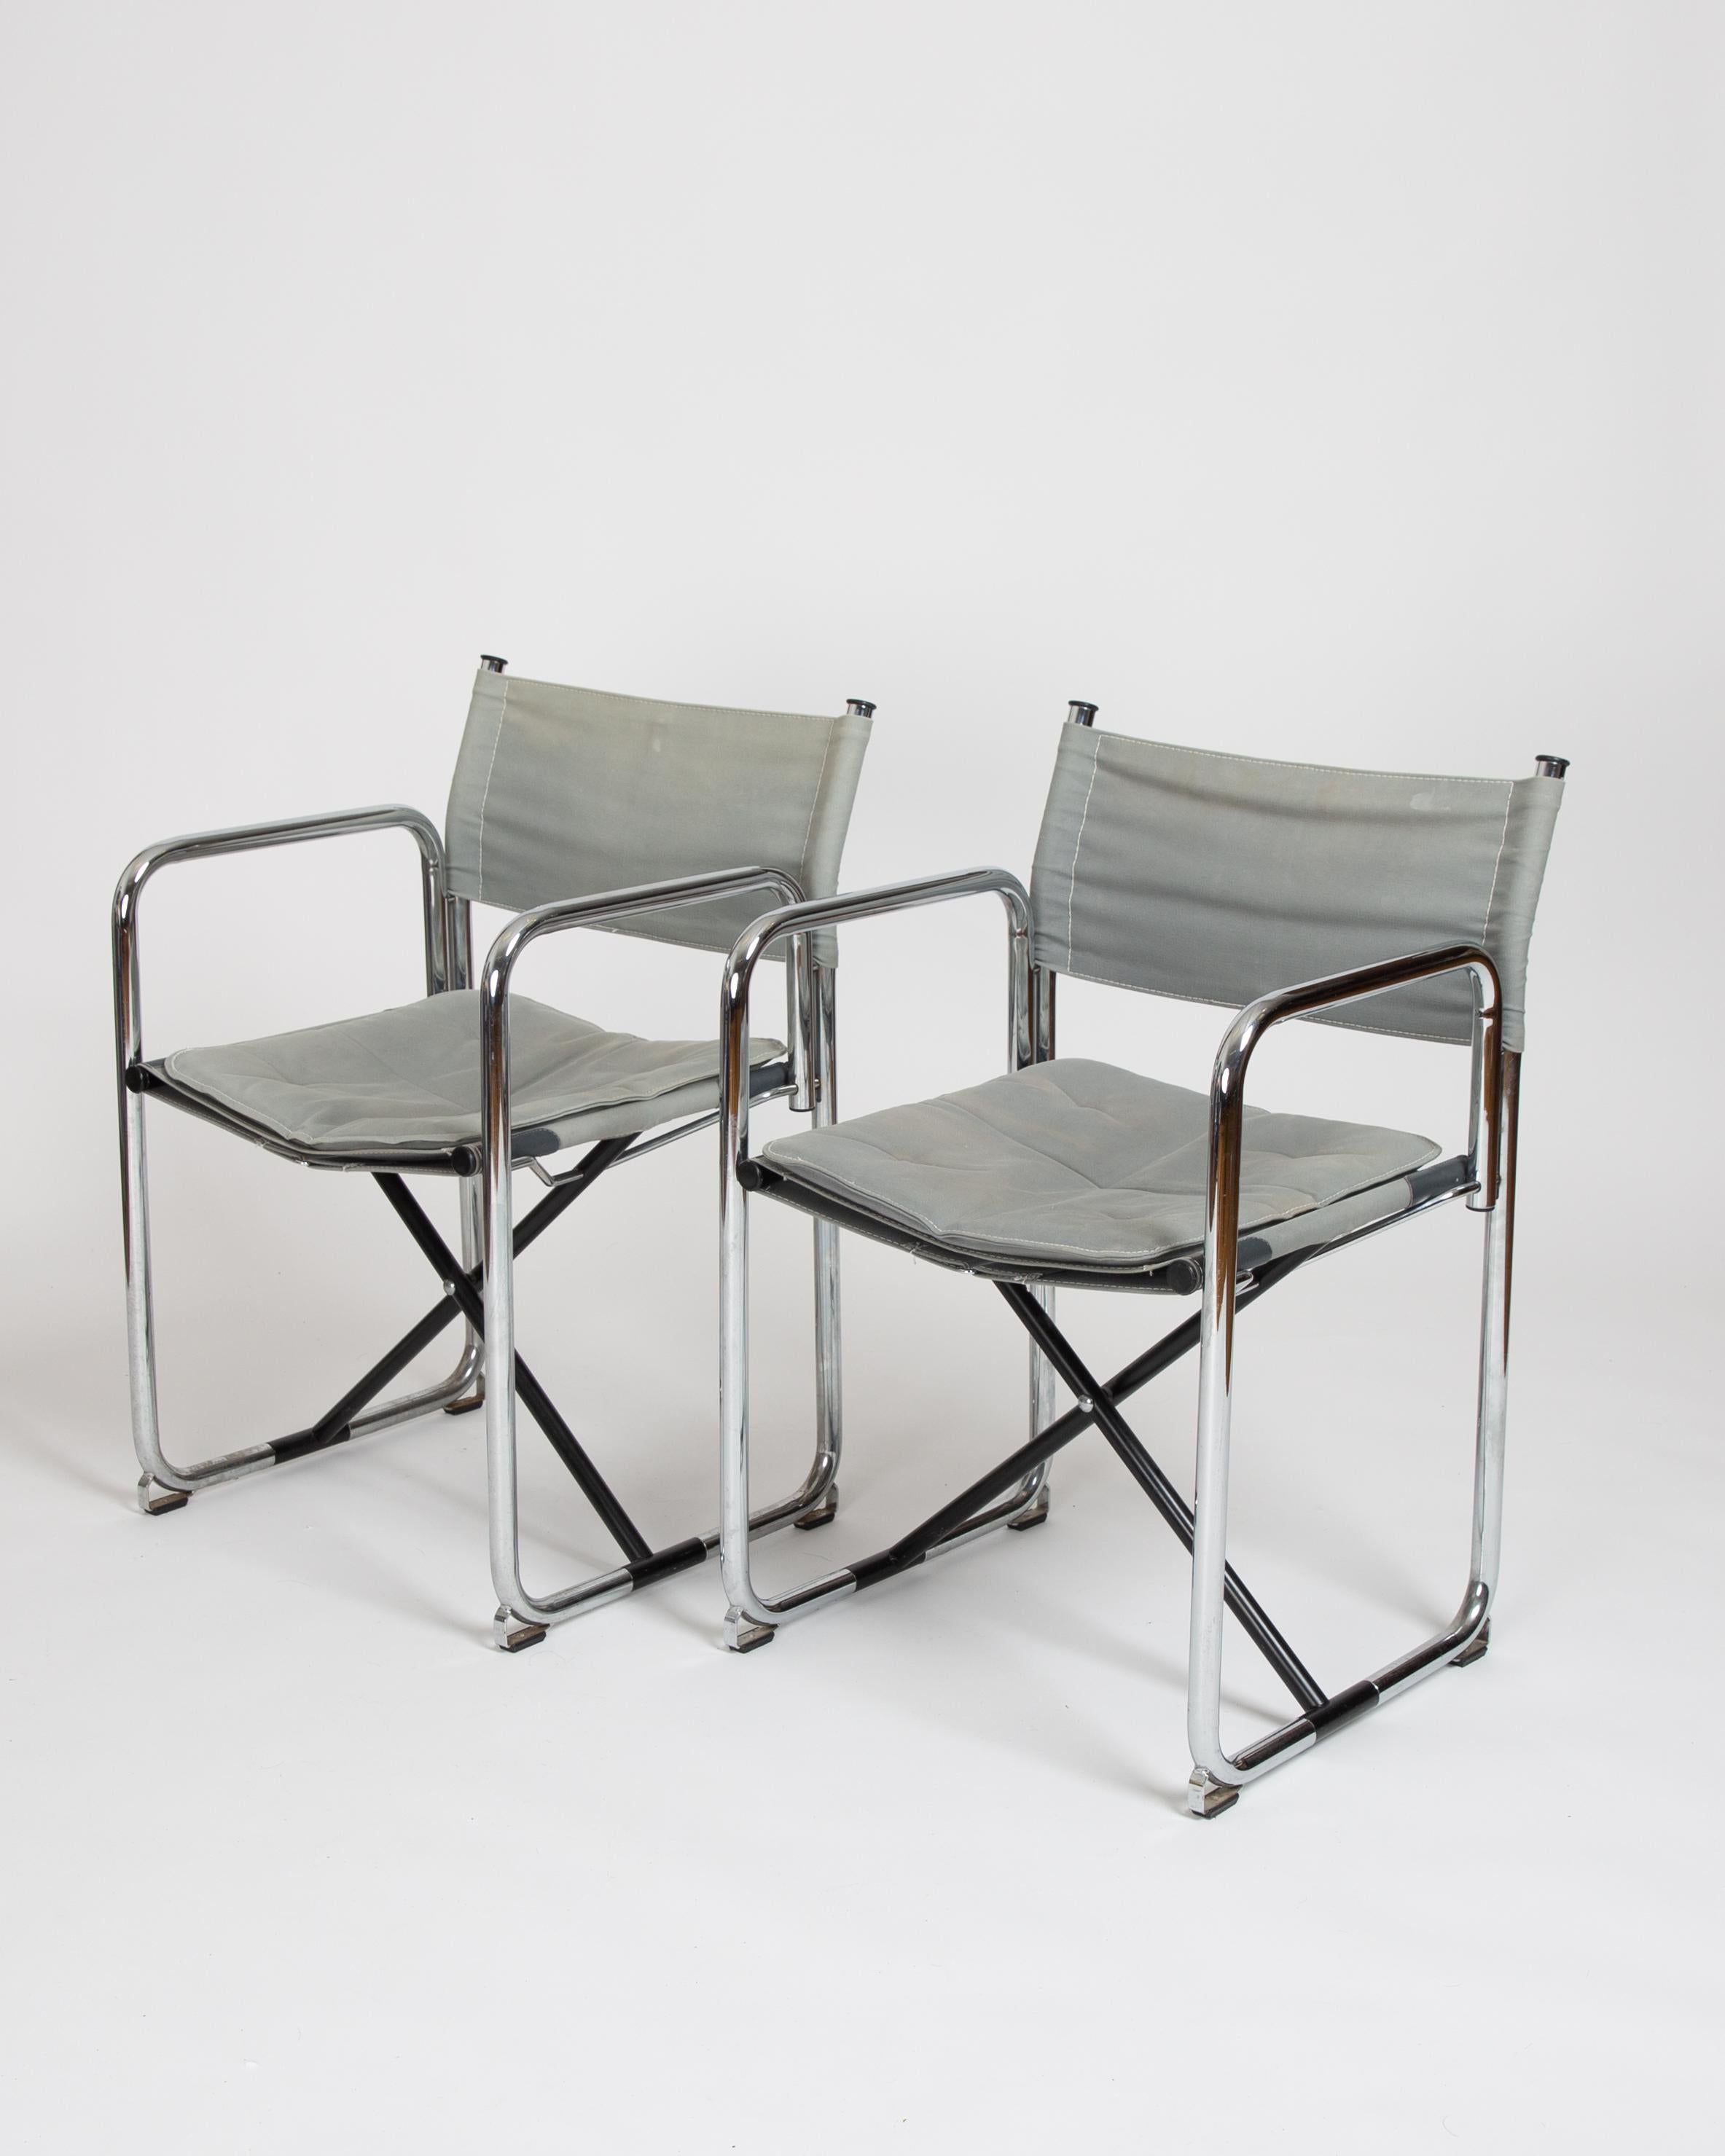 Ein Paar perfekt verblichener X75-2 Stühle. Einer der überzeugendsten faltbaren Stühle, die je hergestellt wurden. Stahlrohr und Segeltuch bilden diesen kultigen Regiestuhl. Das 